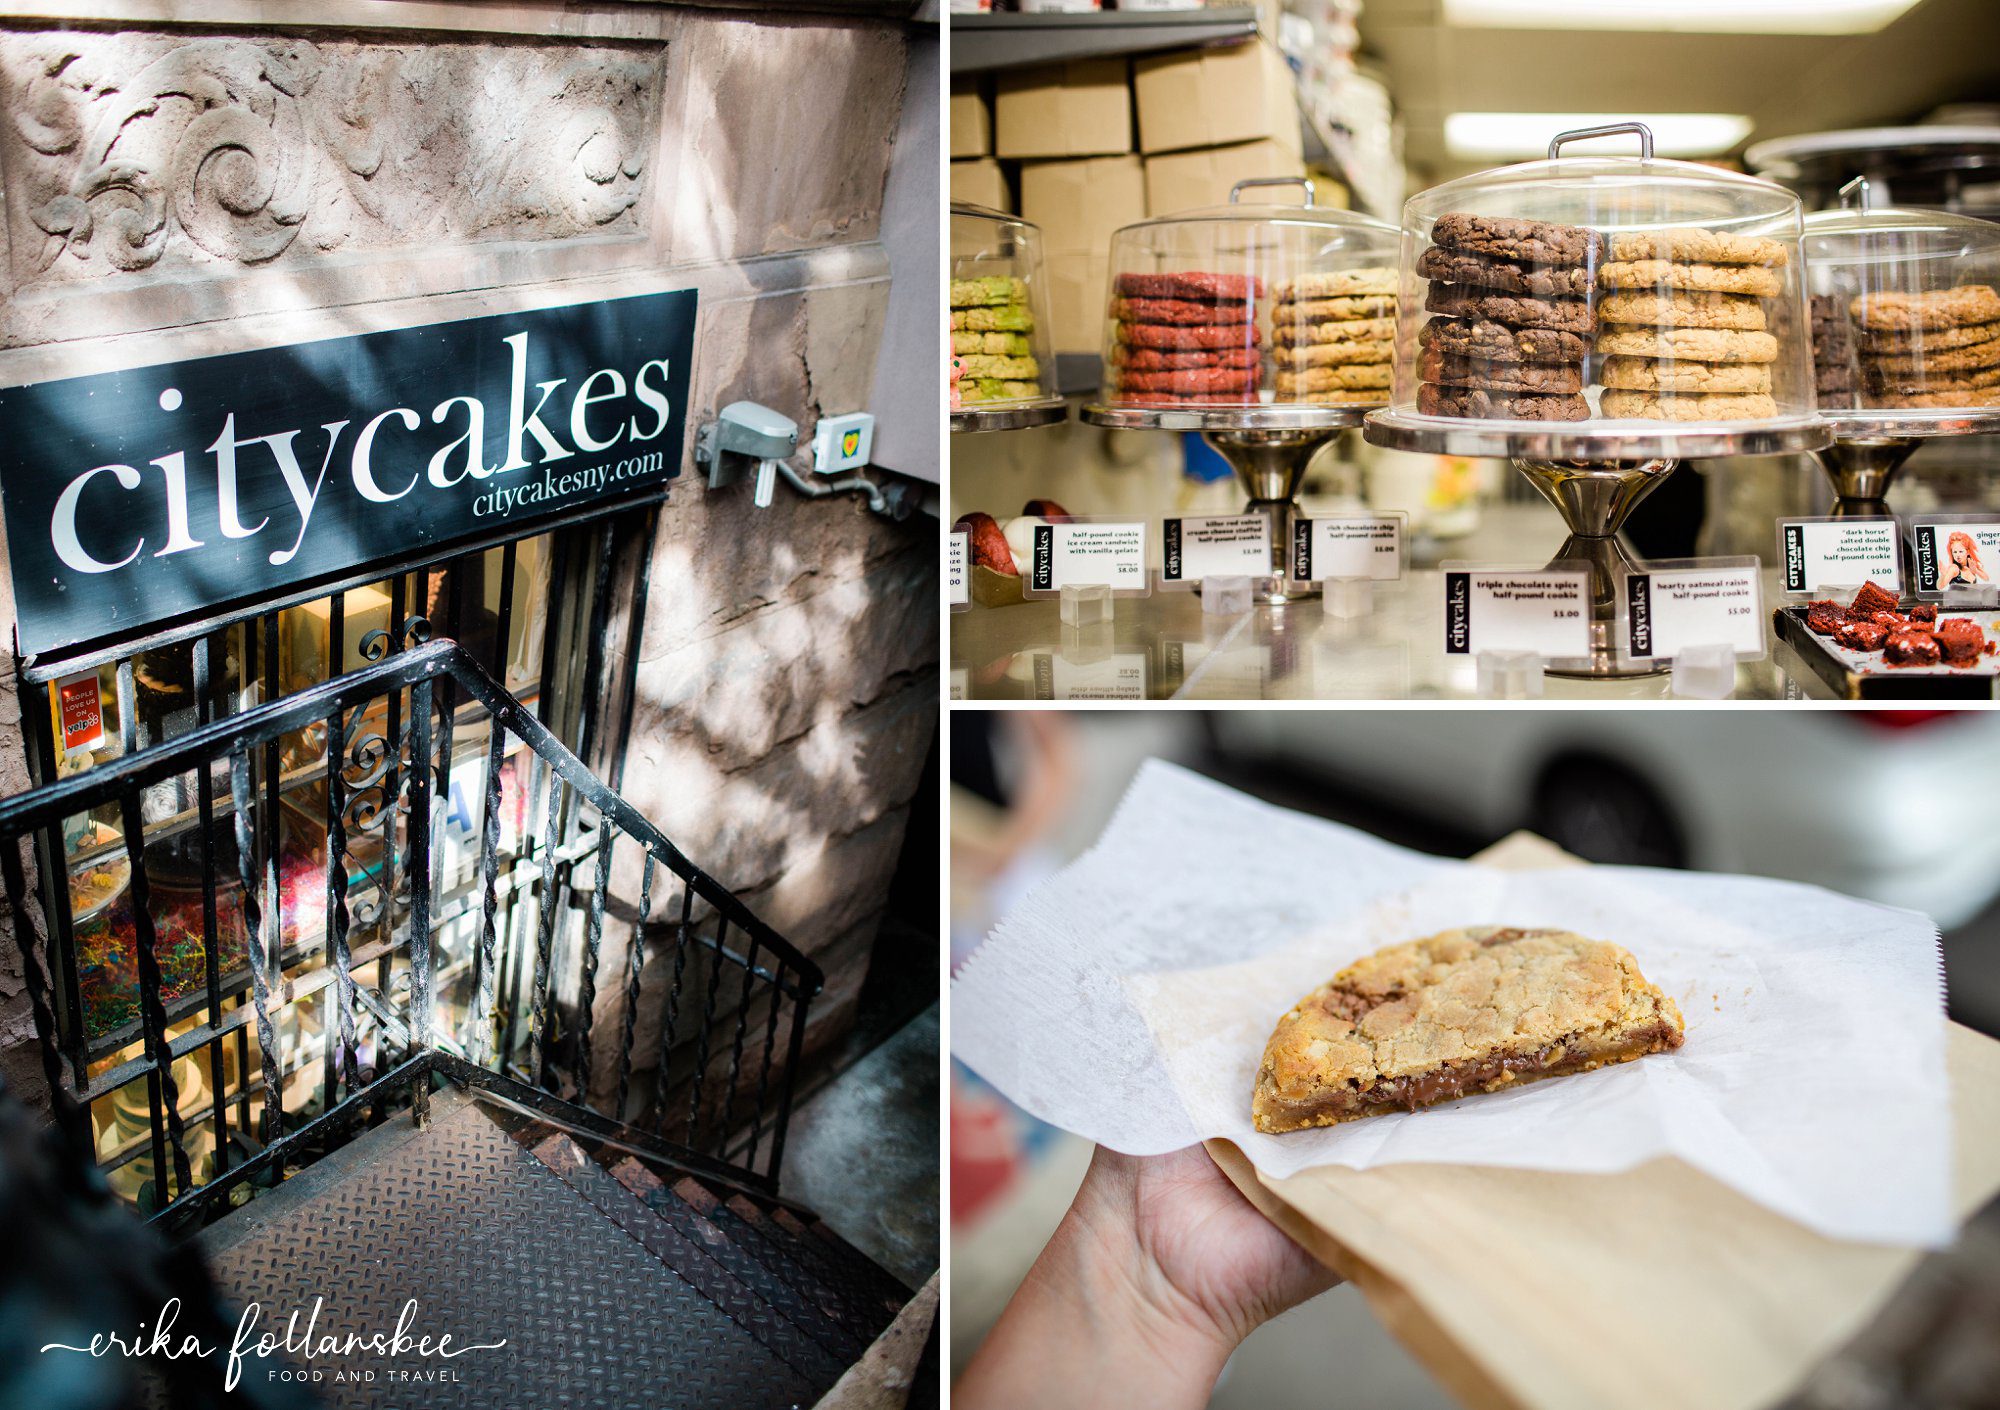 City Cakes half pound cookies | Chelsea, New York